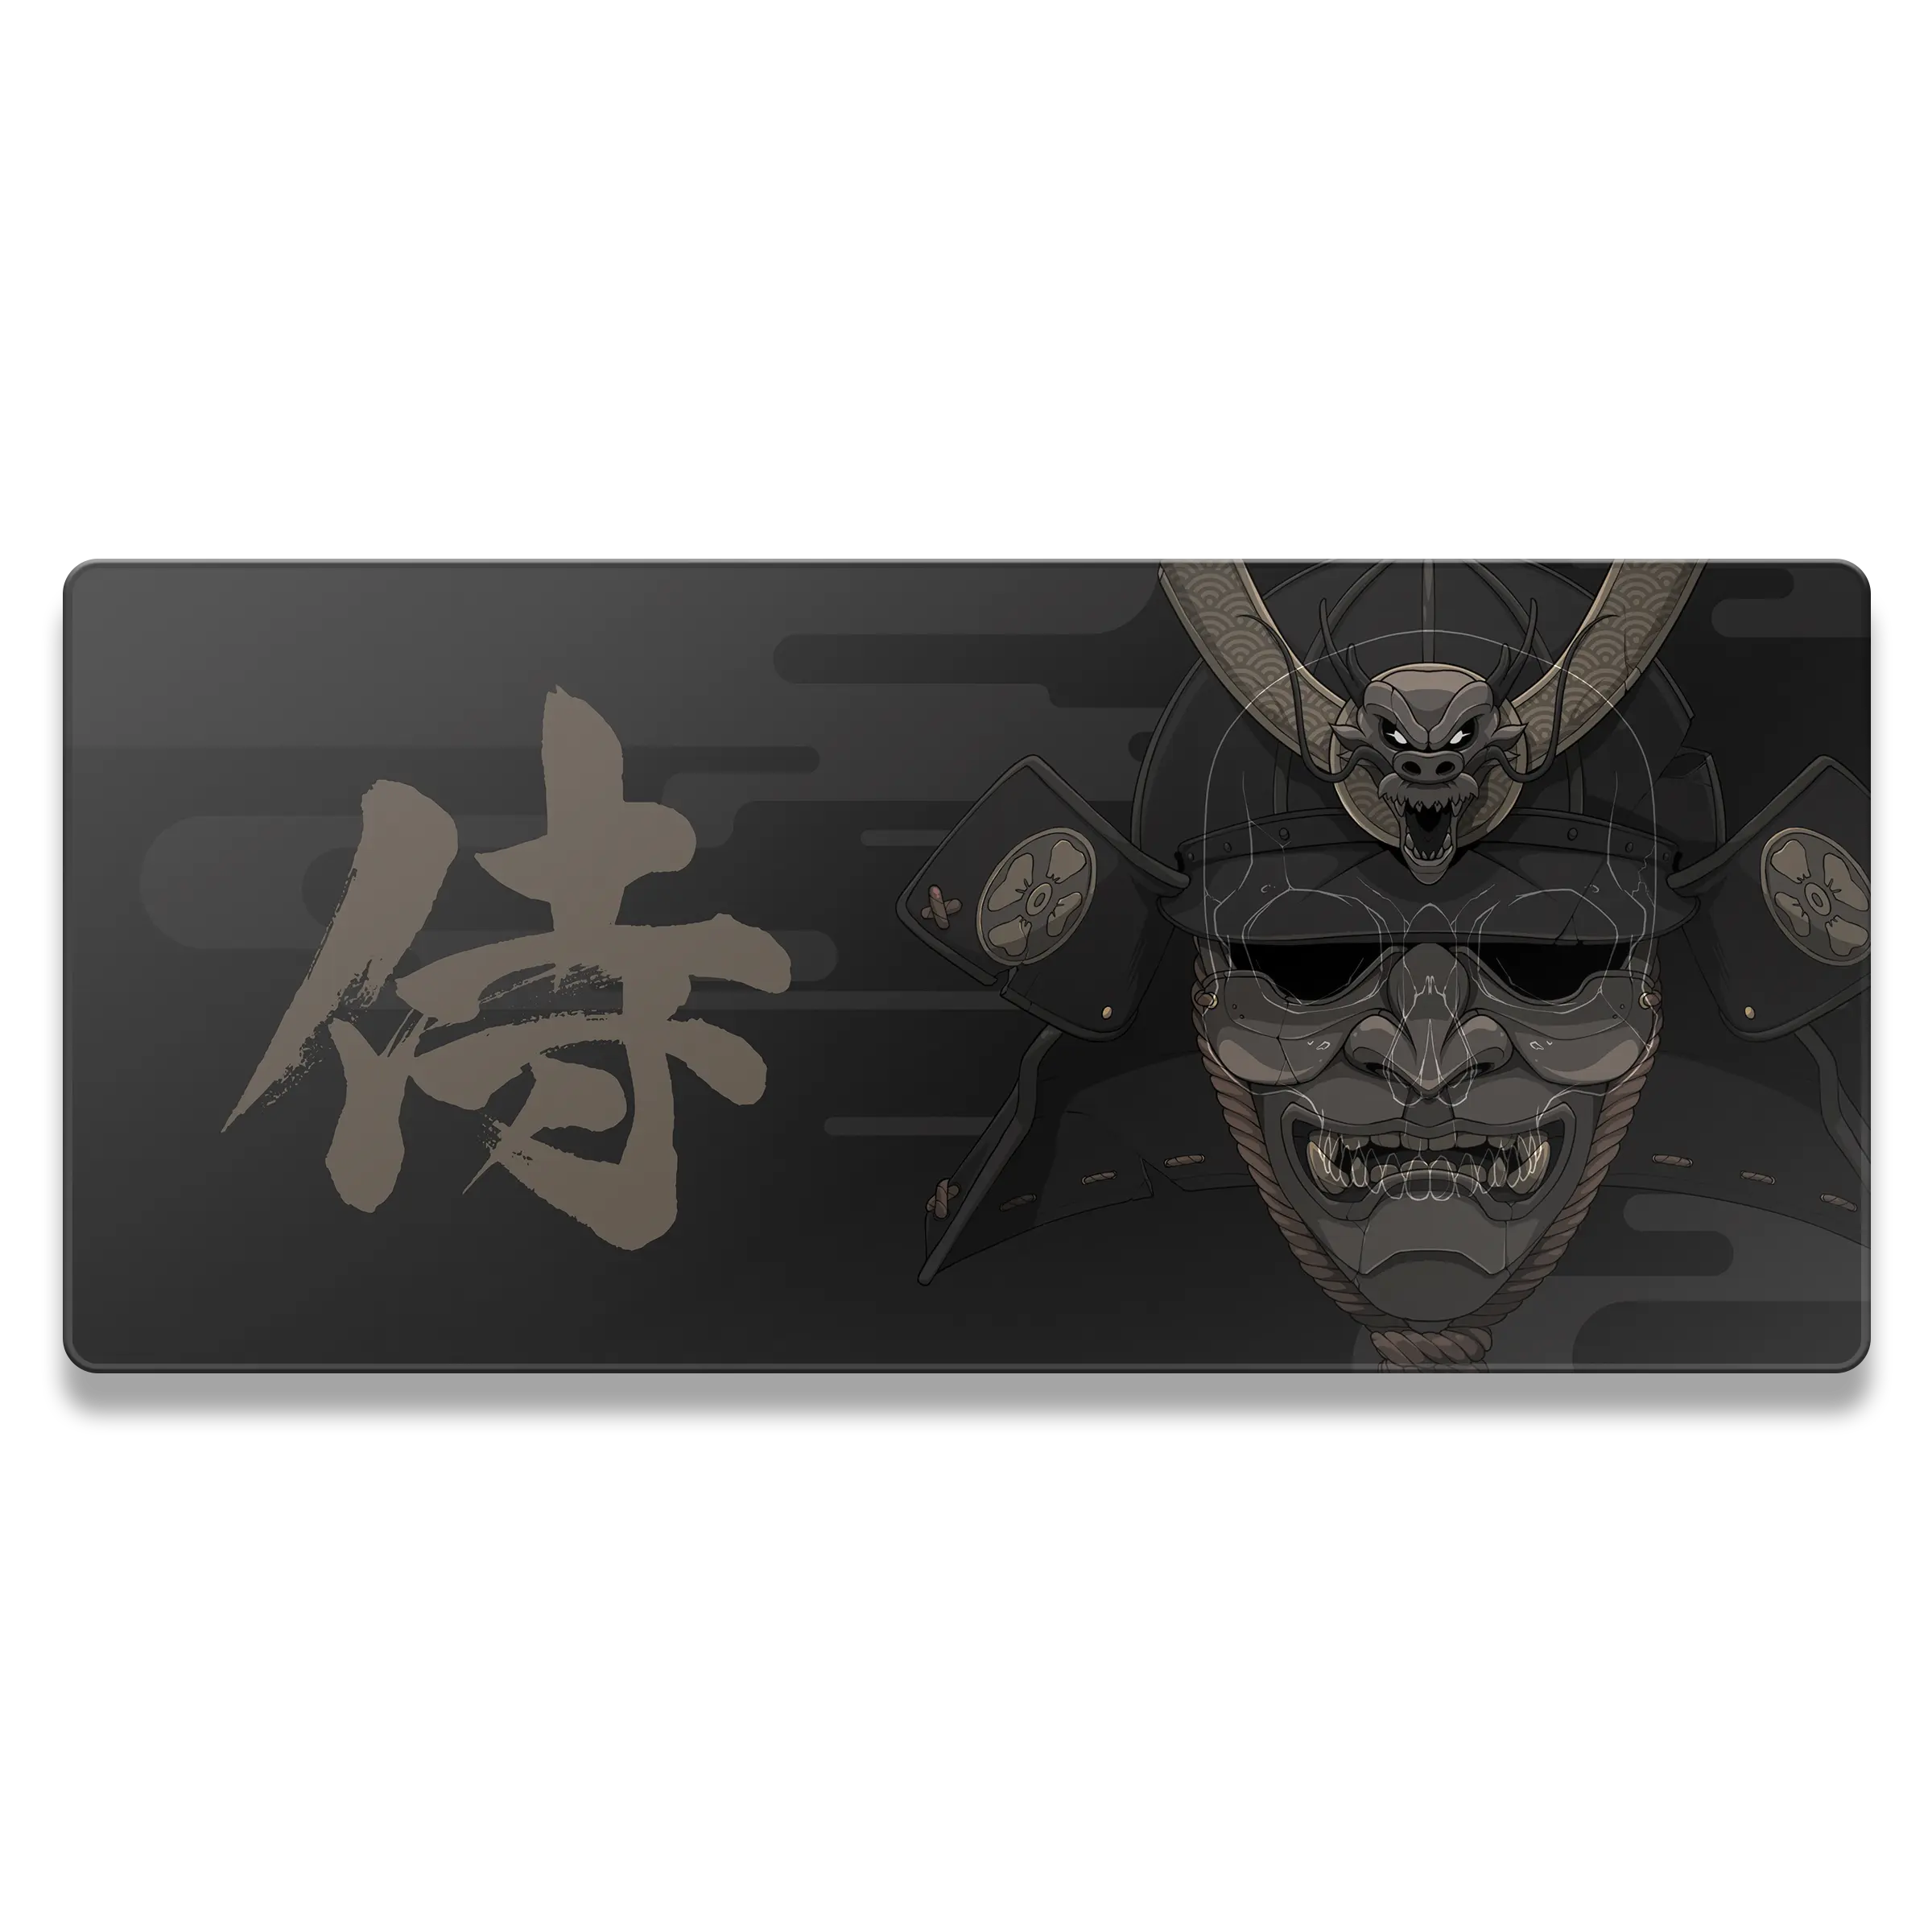 Samurai's Death Mousepad